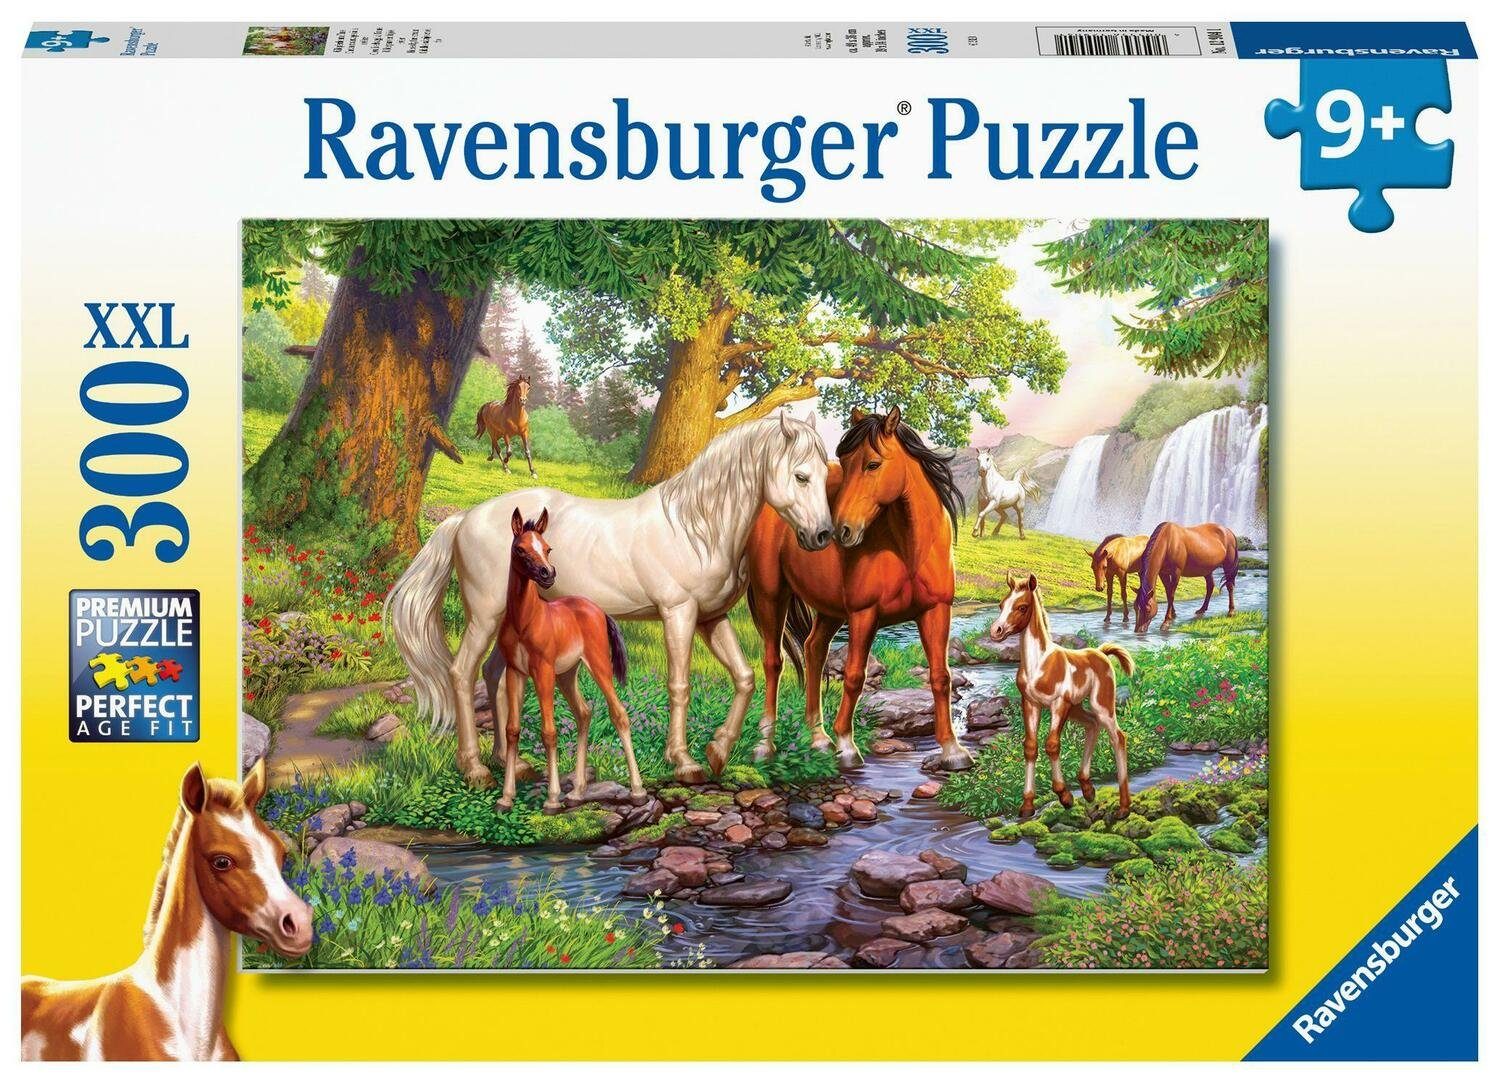 Ravensburger Puzzle Ravensburger Kinderpuzzle am Puzzleteile - 12904 Wildpferde 300 -..., Fluss